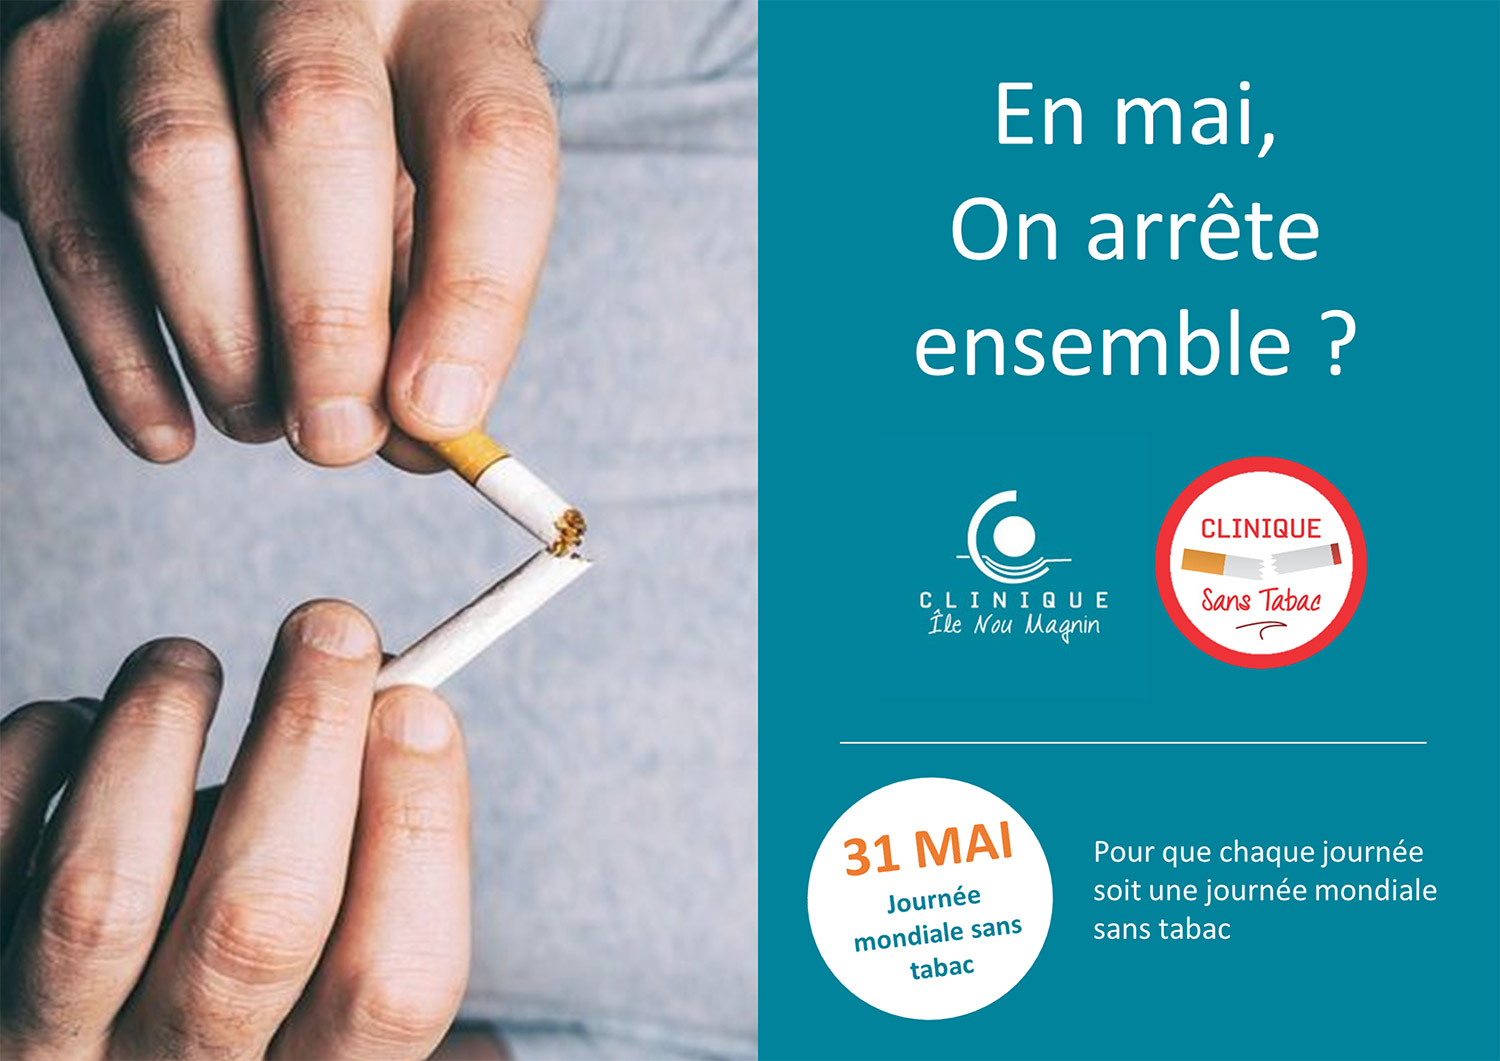 La journée mondiale sans tabac se déroule le 31 mai, nous comptons sur vous !